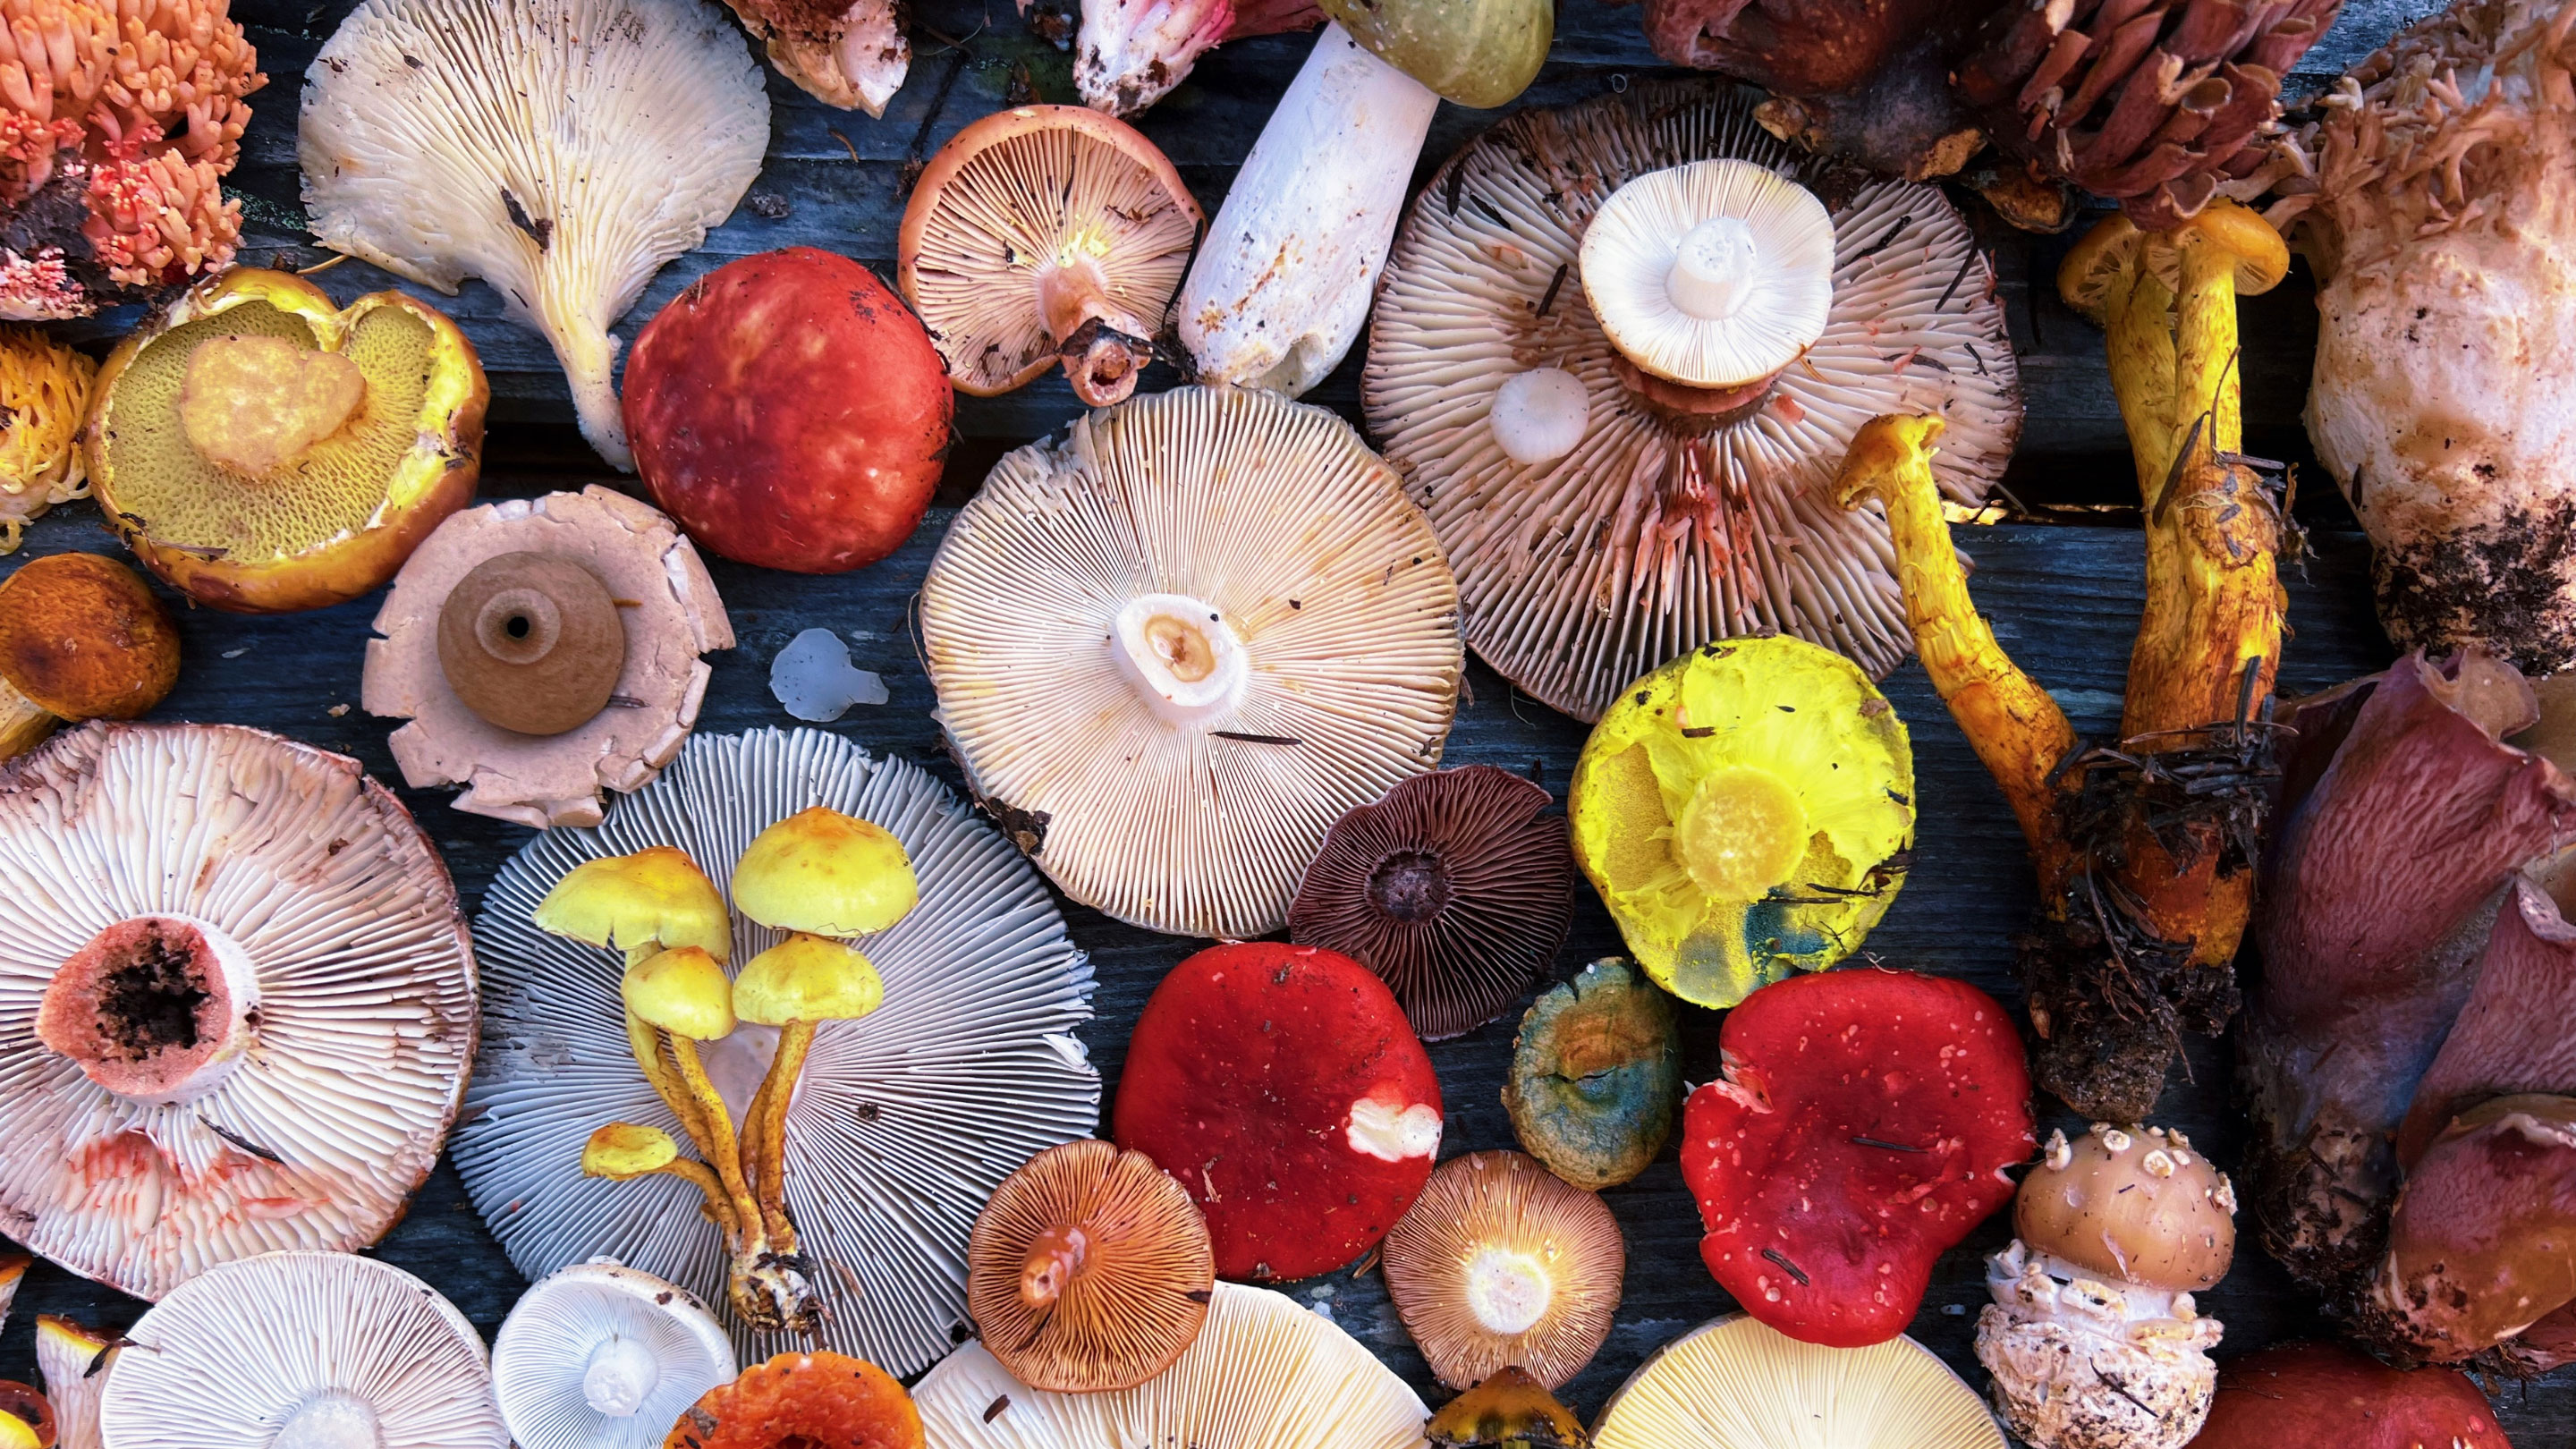 An arrangement of wild mushrooms